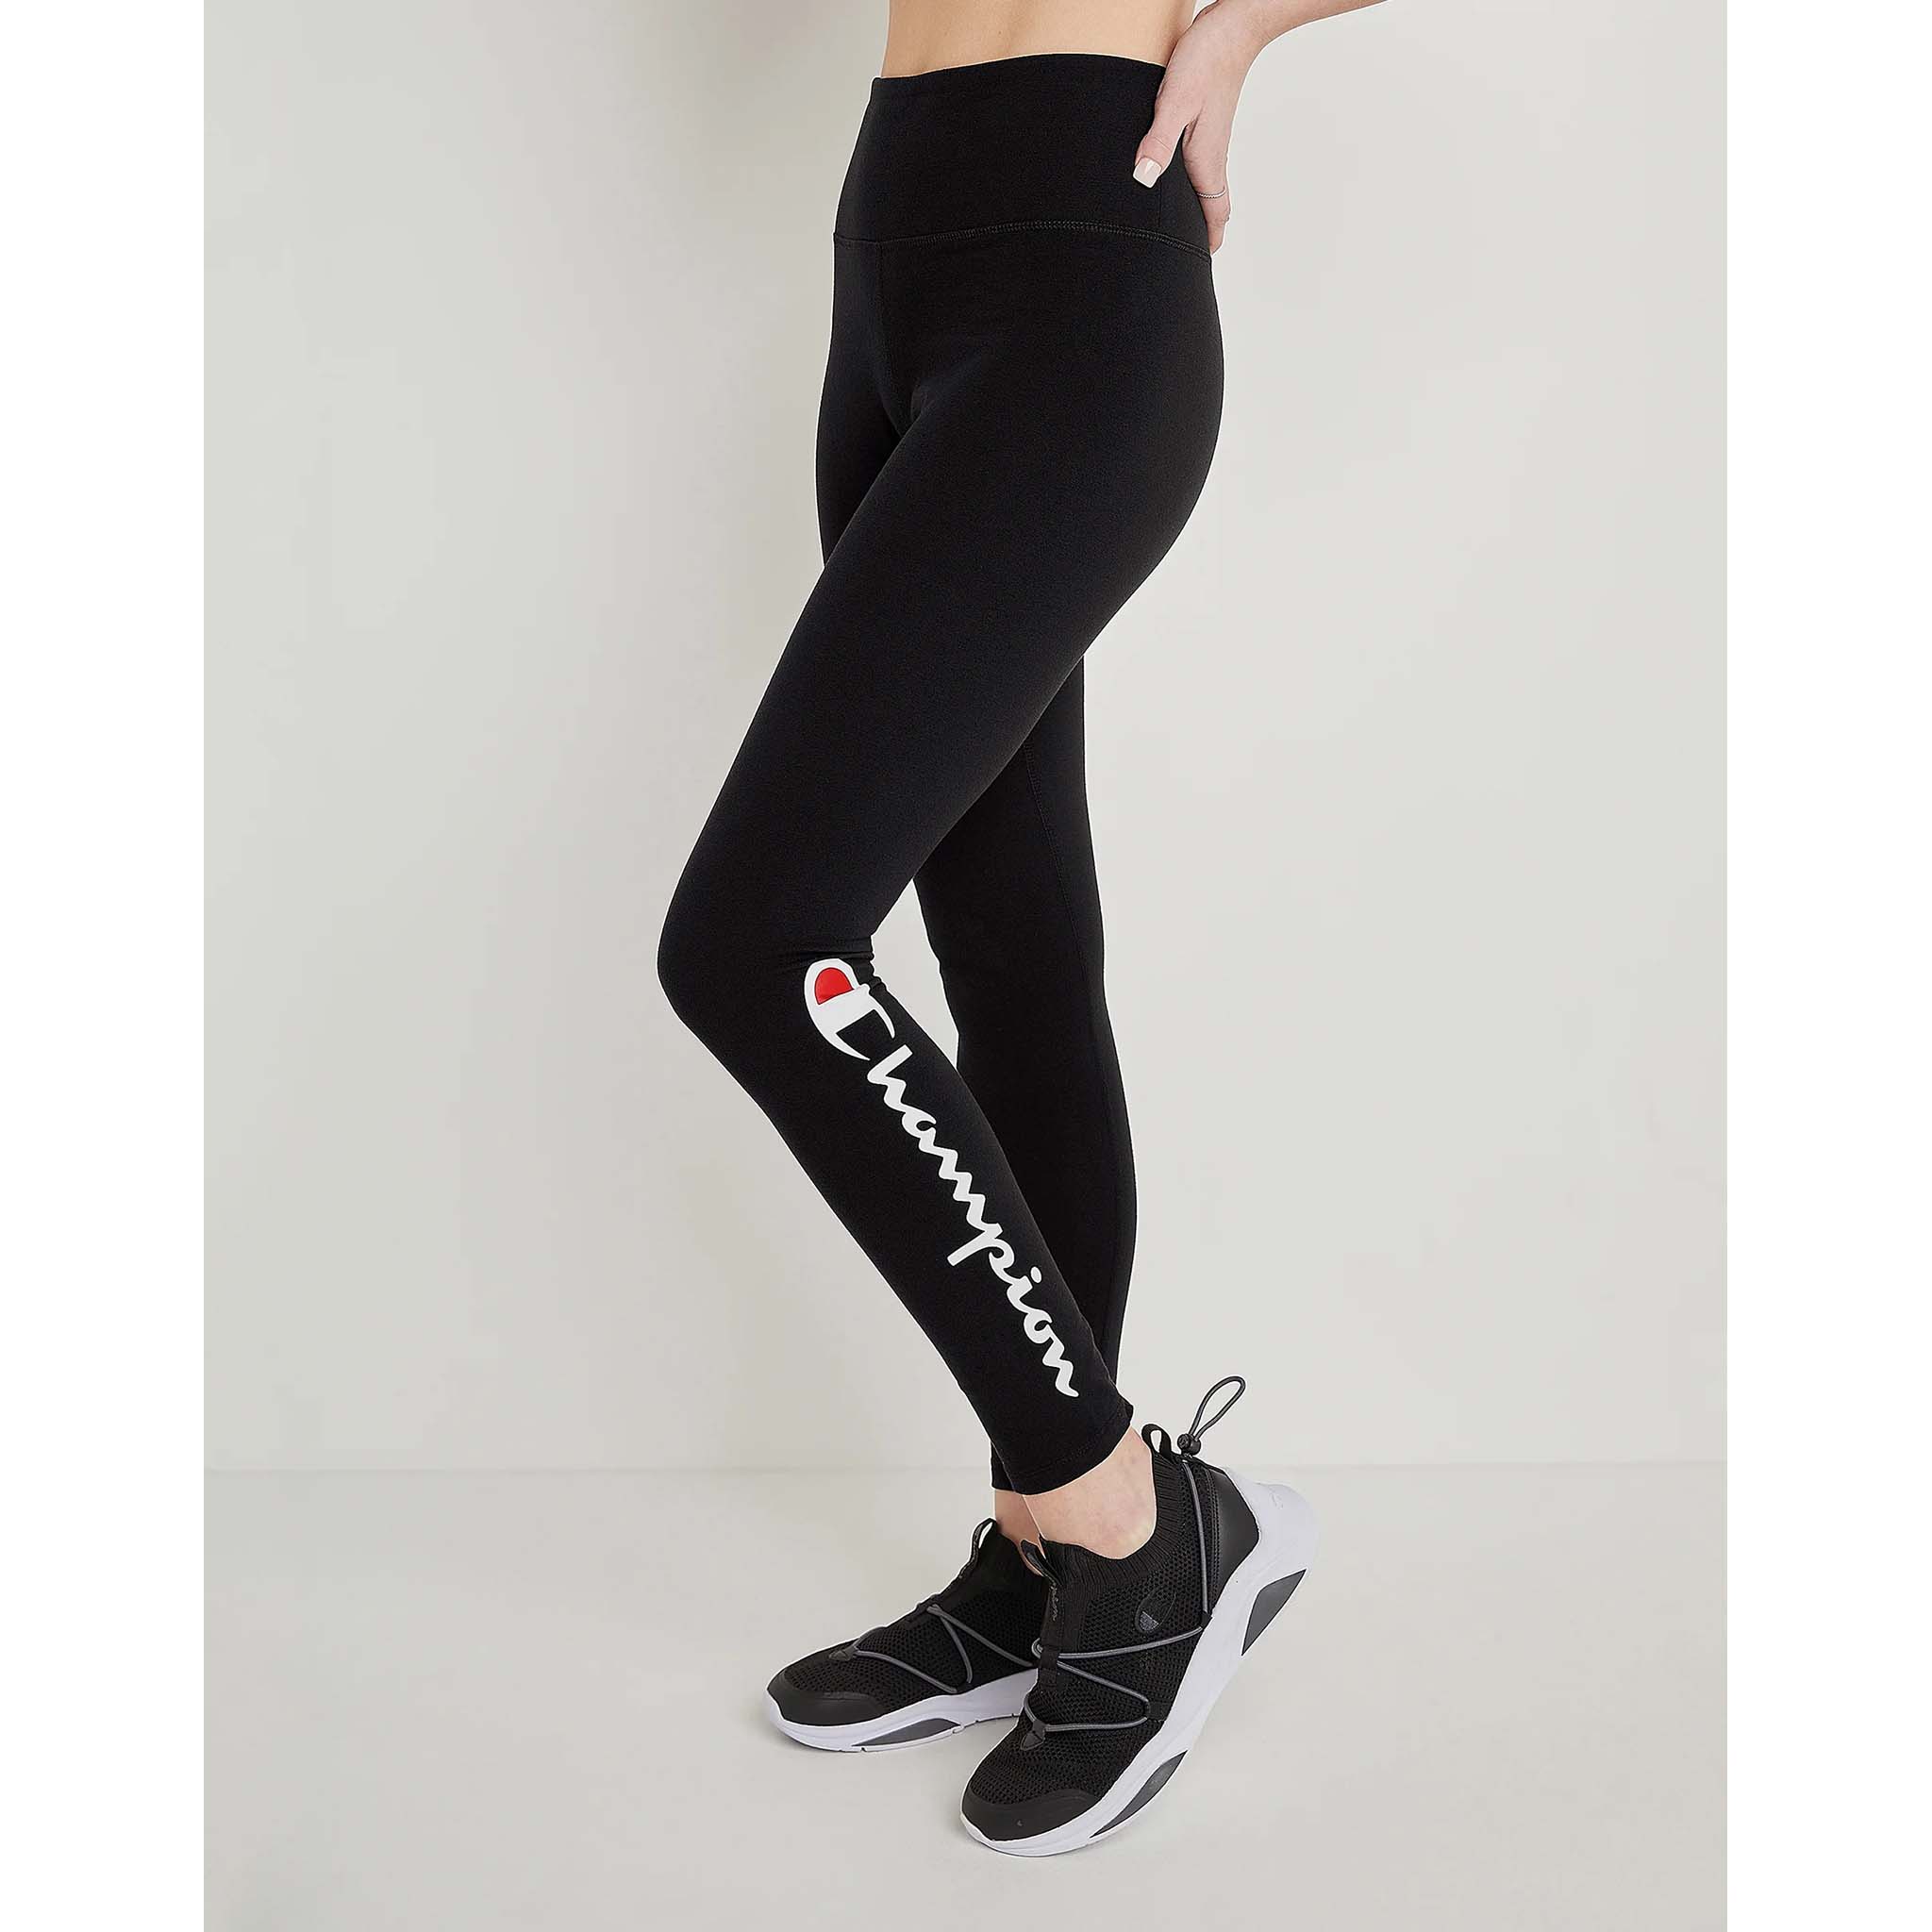 Buy Champion women sportwear fit training leggings black Online